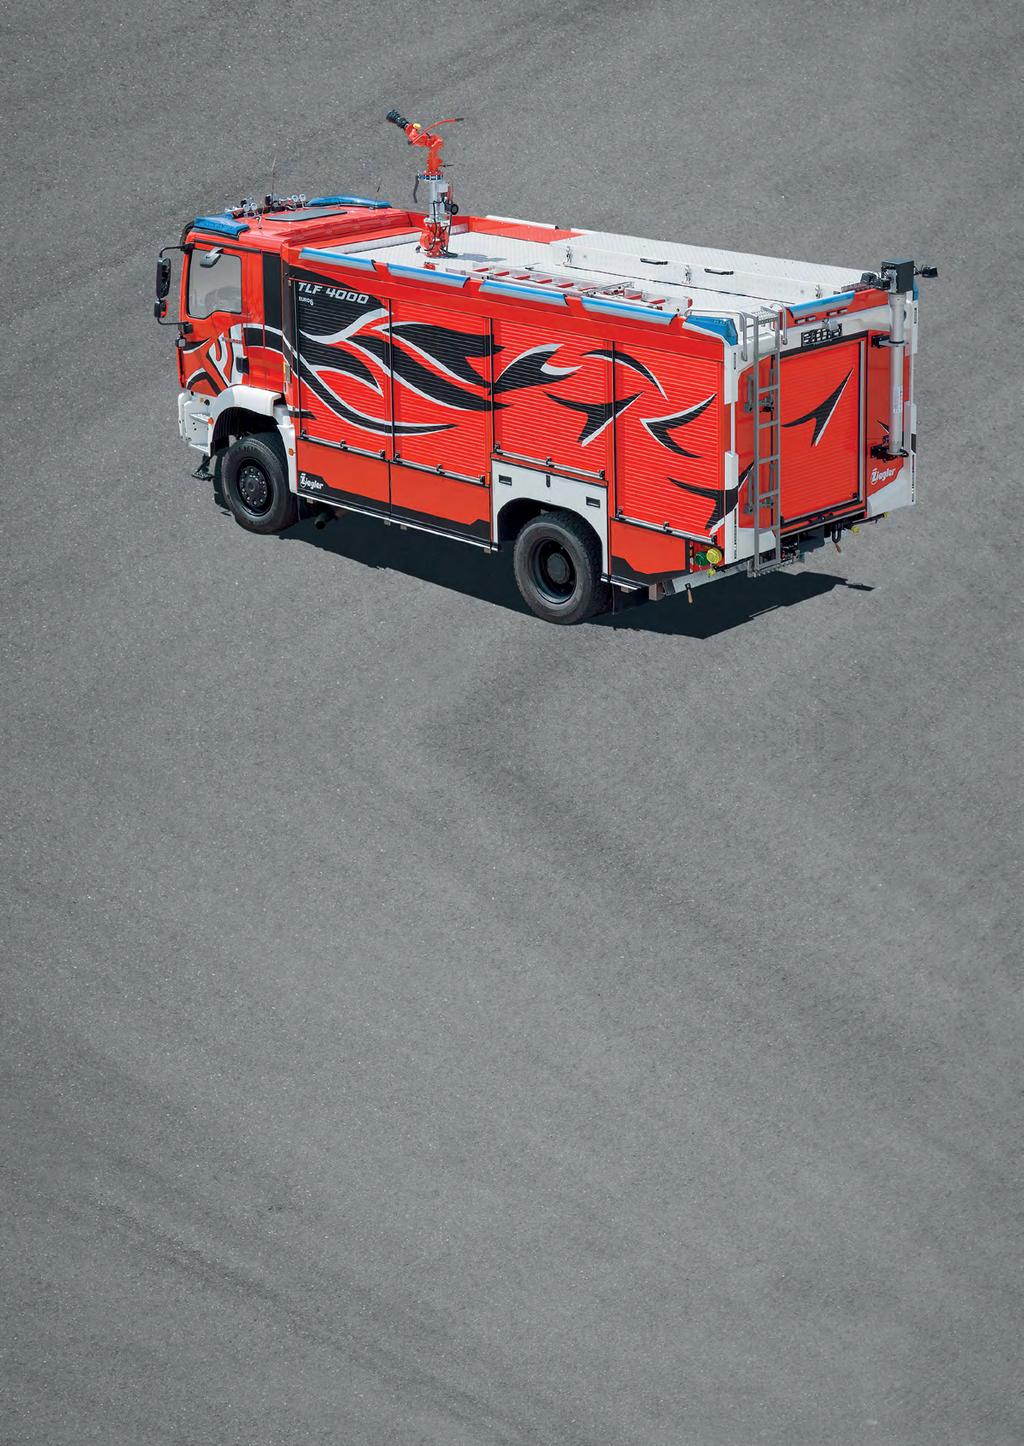 TLF 4000 8 GUTE GRÜNDE, DIE FÜR ZIEGLER SPRECHEN: Jahrzehntelanges Know-how im Bau von Feuerwehrfahrzeugen Einzigartiges Aluminium-Paneel-System ALPAS für gewichtsreduzierte, uneingeschränkt variable